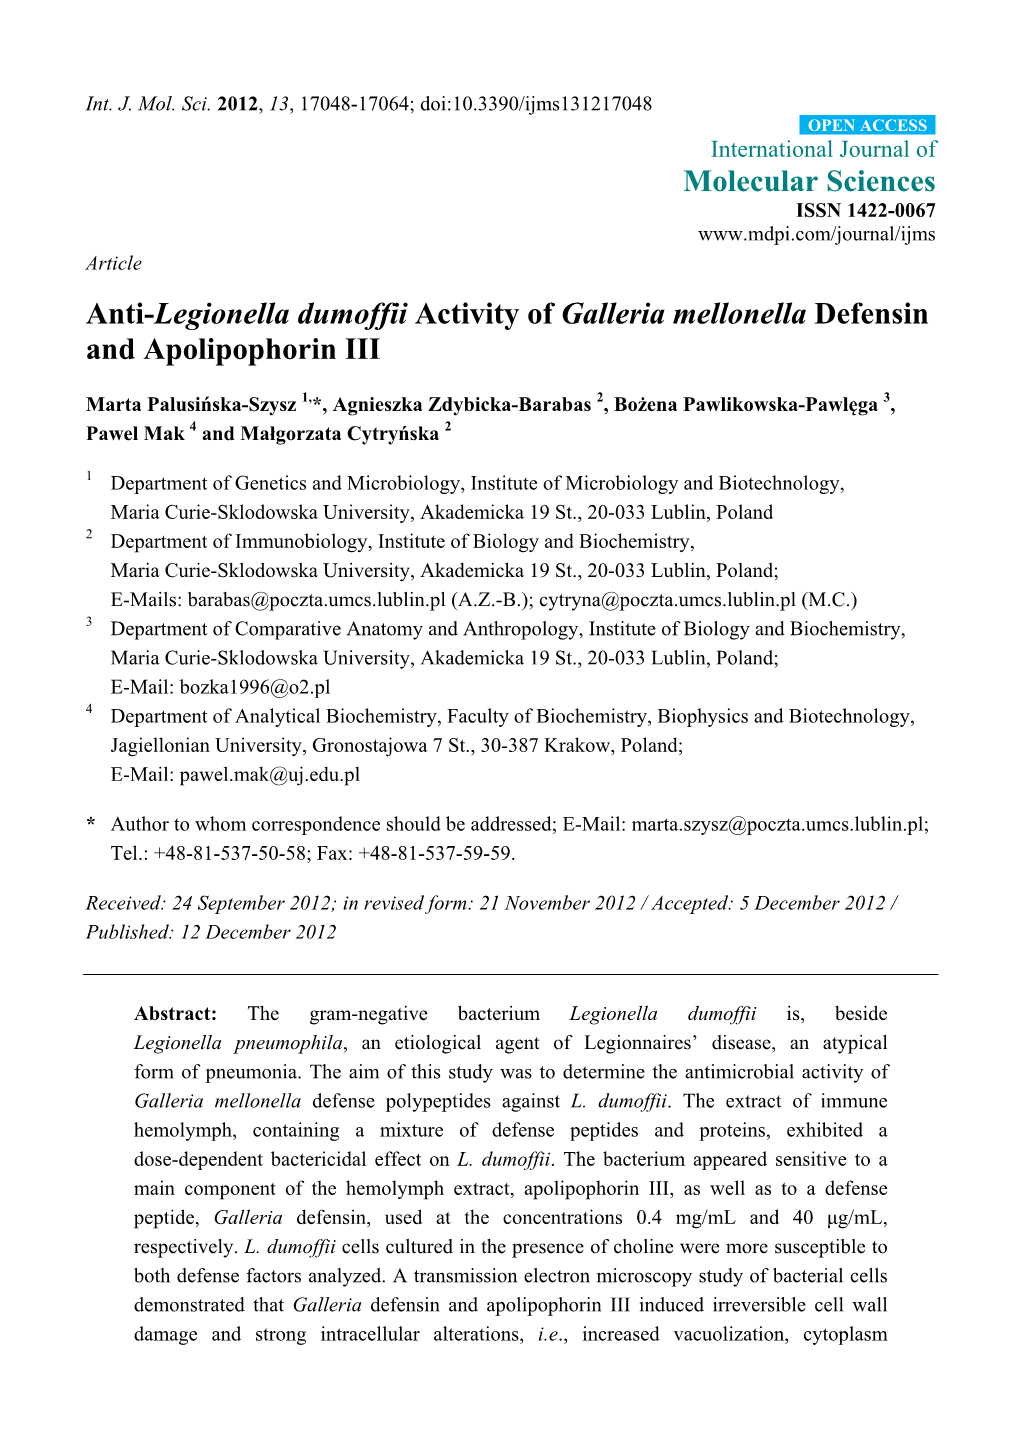 Anti-Legionella Dumoffii Activity of Galleria Mellonella Defensin and Apolipophorin III